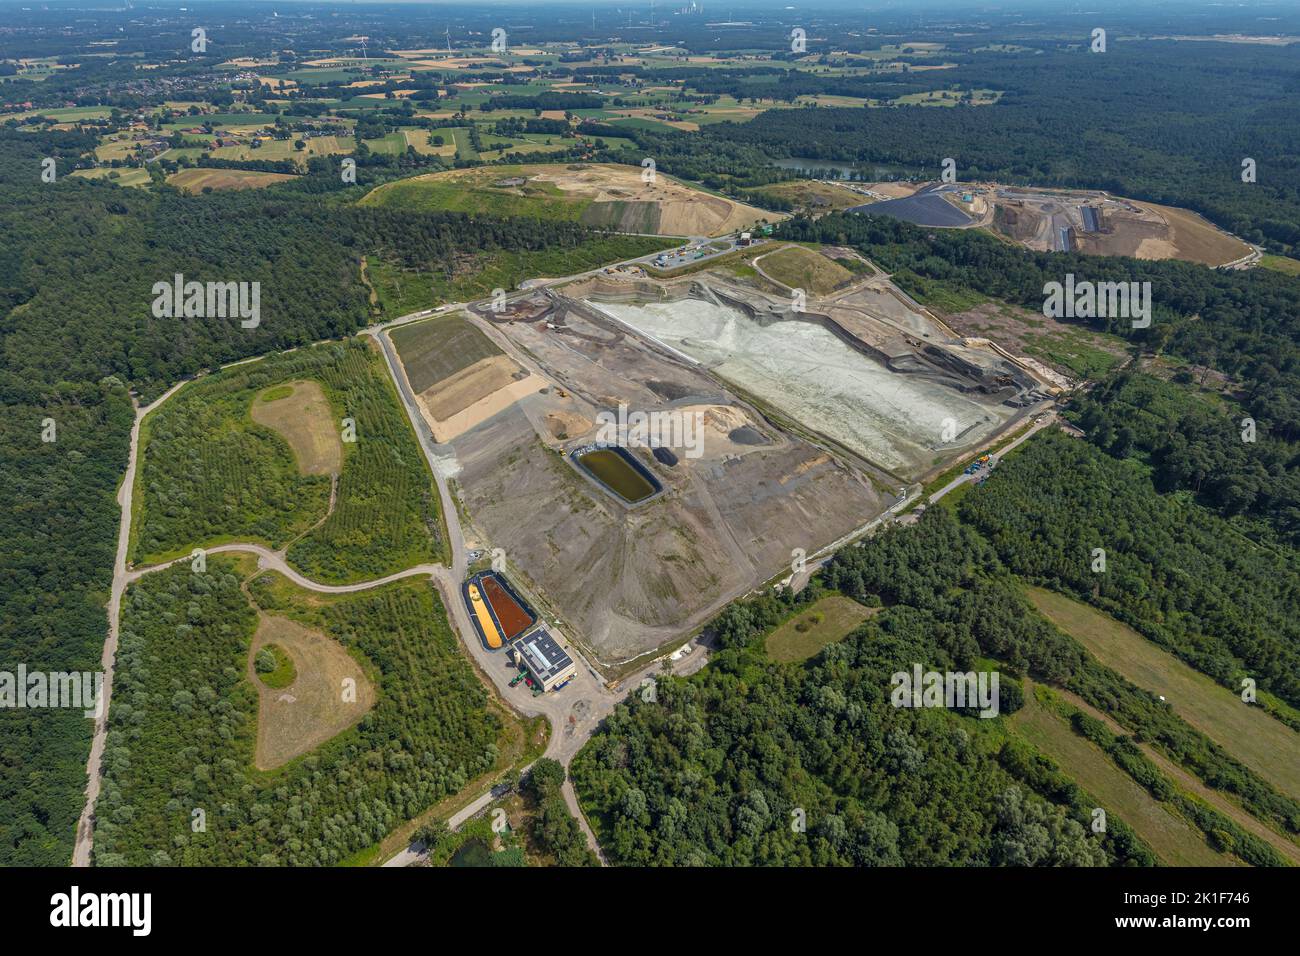 Aerial view, Mühlenberg site of Nottenkaemper GmbH, Hünxe-Schermback hazardous waste landfill, Gartrop, Hünxe, Ruhr area, North Rhine-Westphalia, Germ Stock Photo